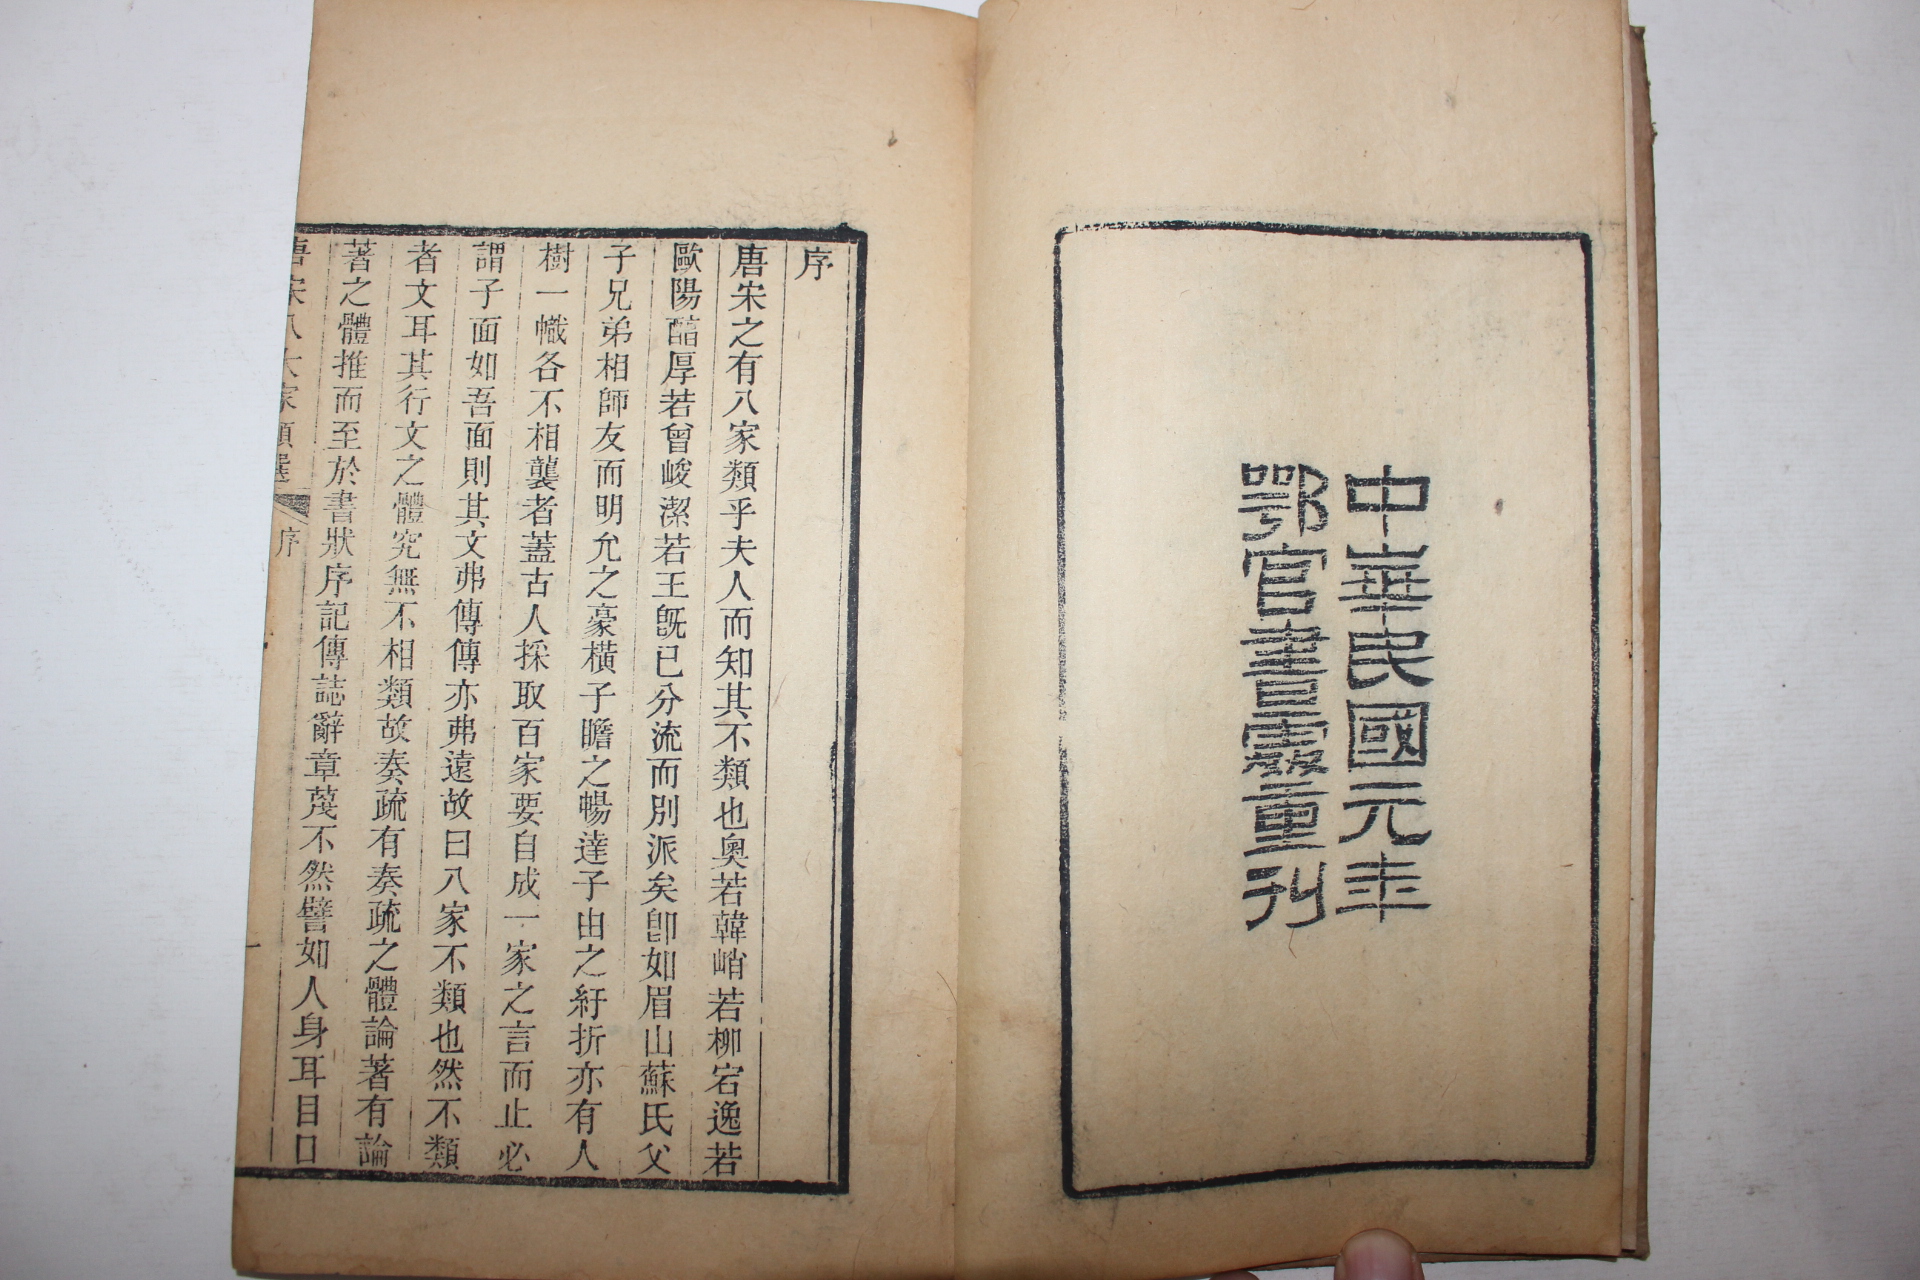 1912년(民國元年) 중국목판본 당송팔대가류선(唐宋八大家類選) 14책